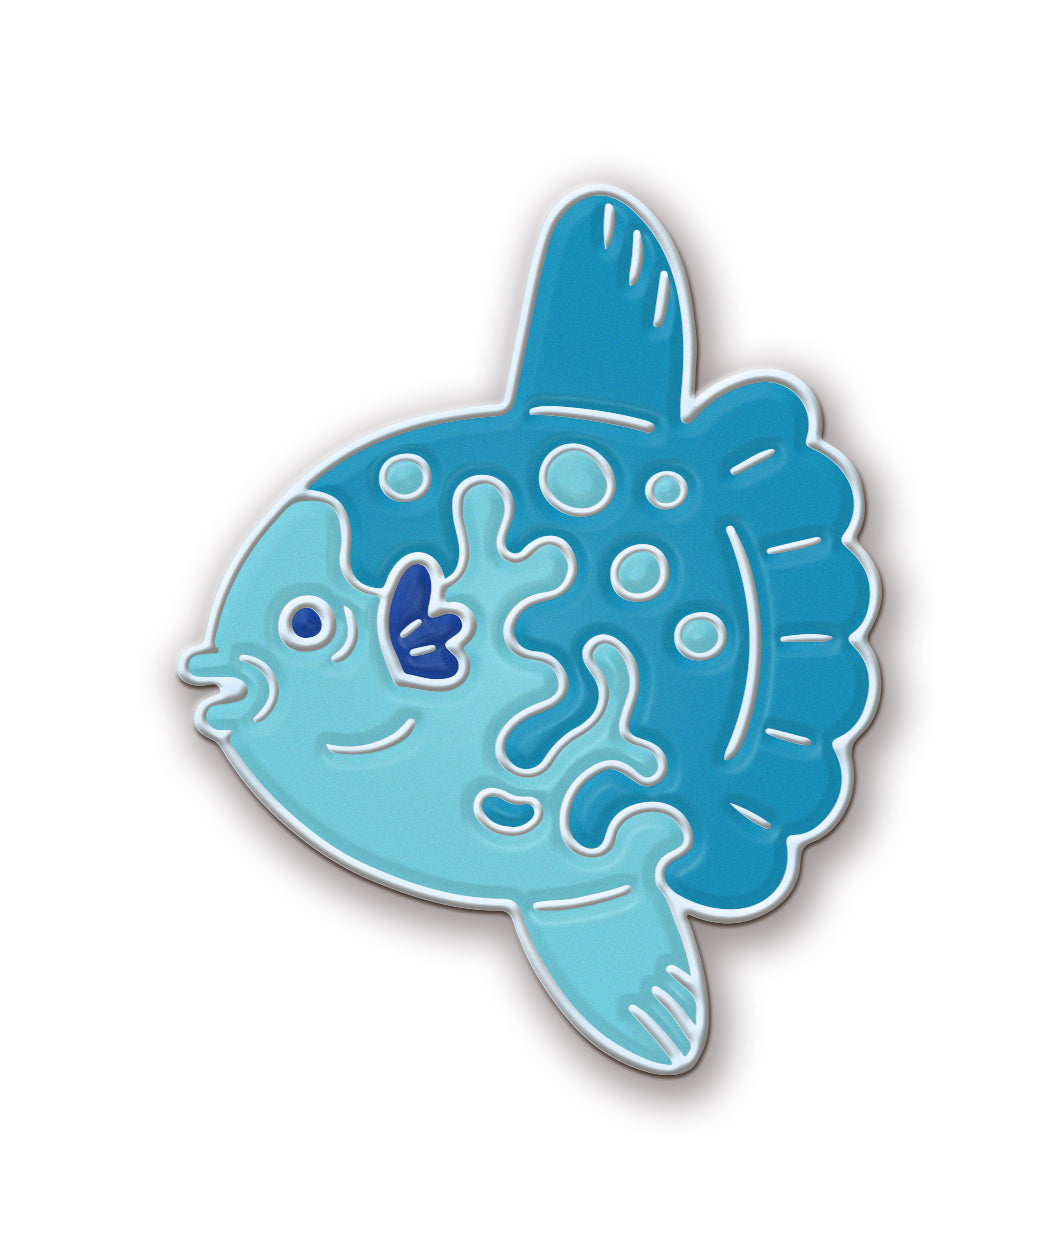 A light and dark blue pin shaped like a Mola Mola fish.